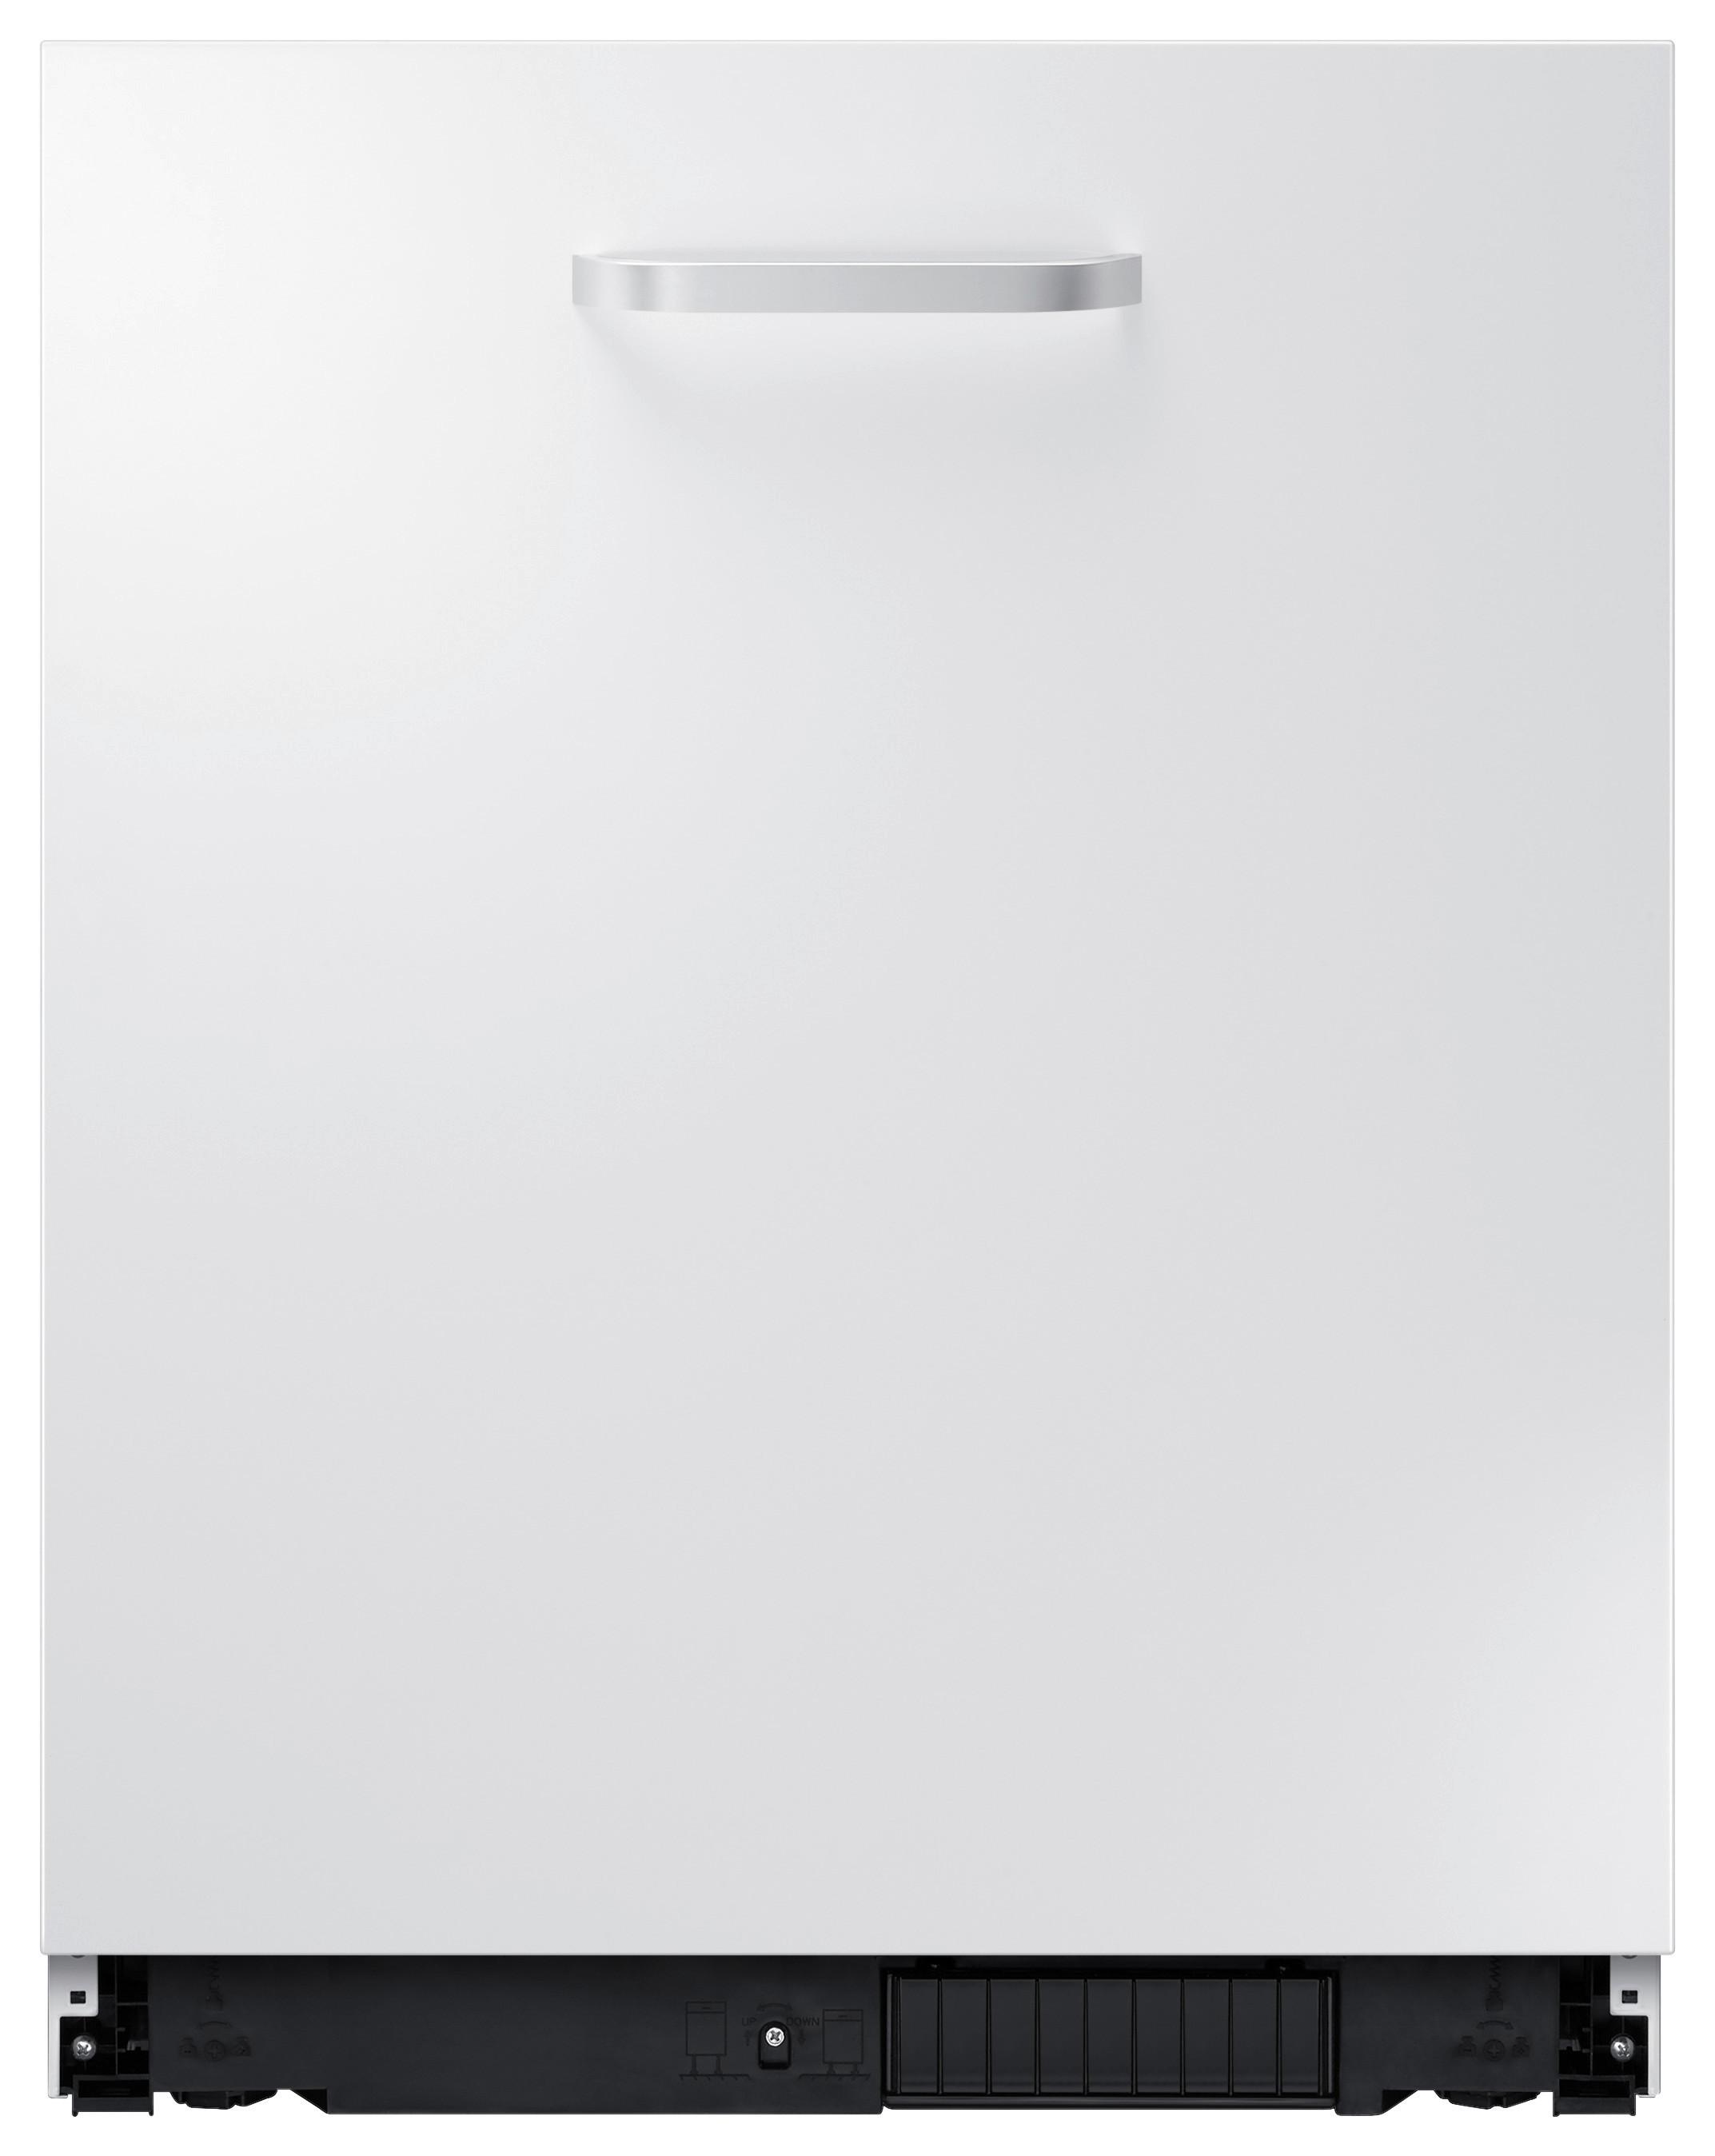 Einbau-Geschirrspüler Dw60m605 0bb/Eo B: 60 cm - Weiß, Basics, Kunststoff/Metall (59,8/81,5/57cm) - Samsung